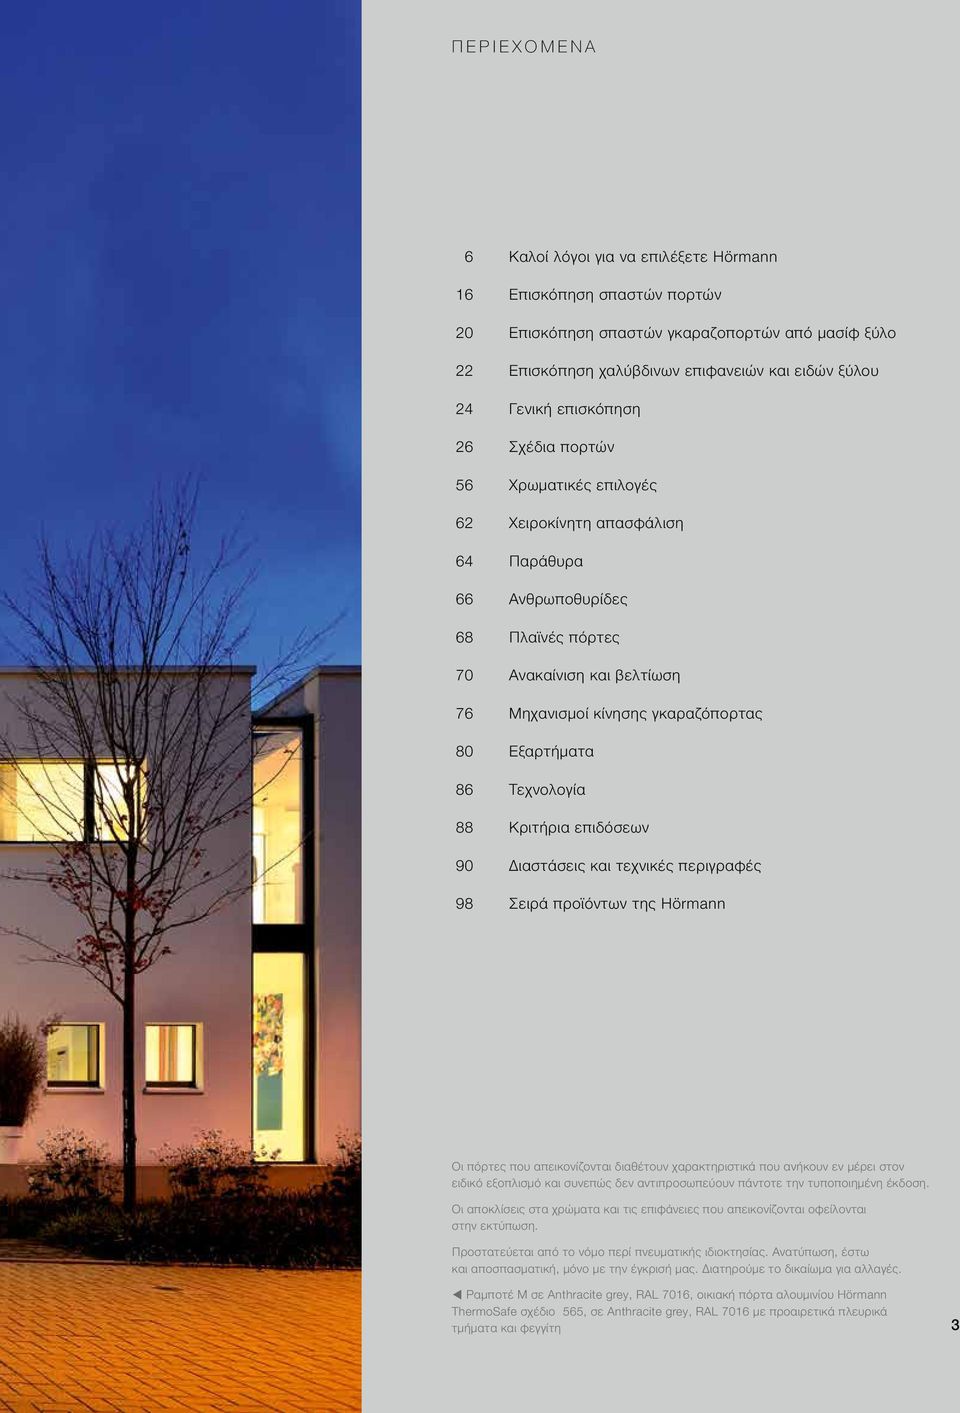 Εξαρτήματα 86 Τεχνολογία 88 Κριτήρια επιδόσεων 90 Διαστάσεις και τεχνικές περιγραφές 98 Σειρά προϊόντων της Hörmann Οι πόρτες που απεικονίζονται διαθέτουν χαρακτηριστικά που ανήκουν εν μέρει στον